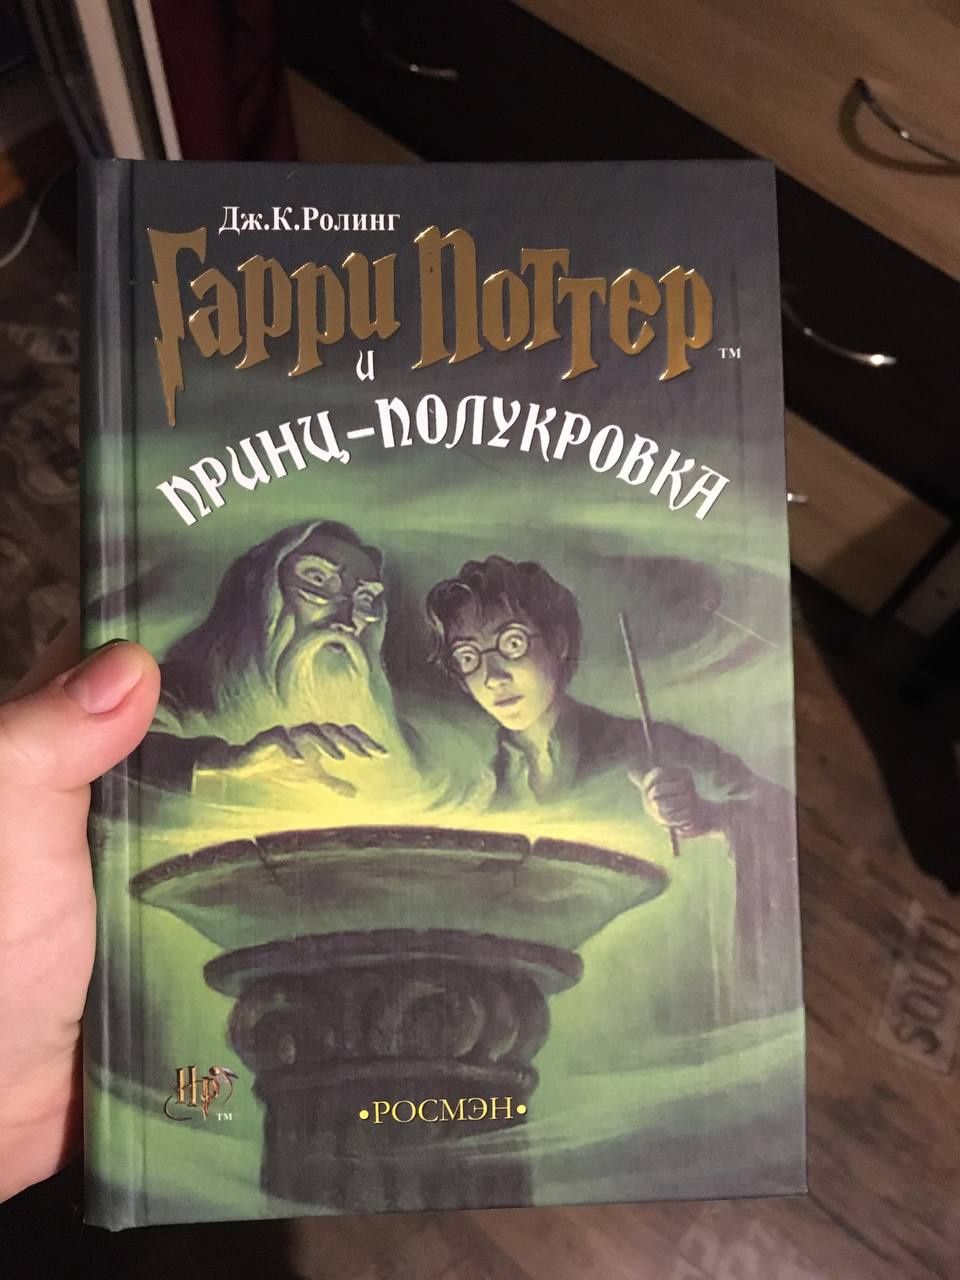 Комплект Гарри Поттер все 7 частей + Проклятое дитя